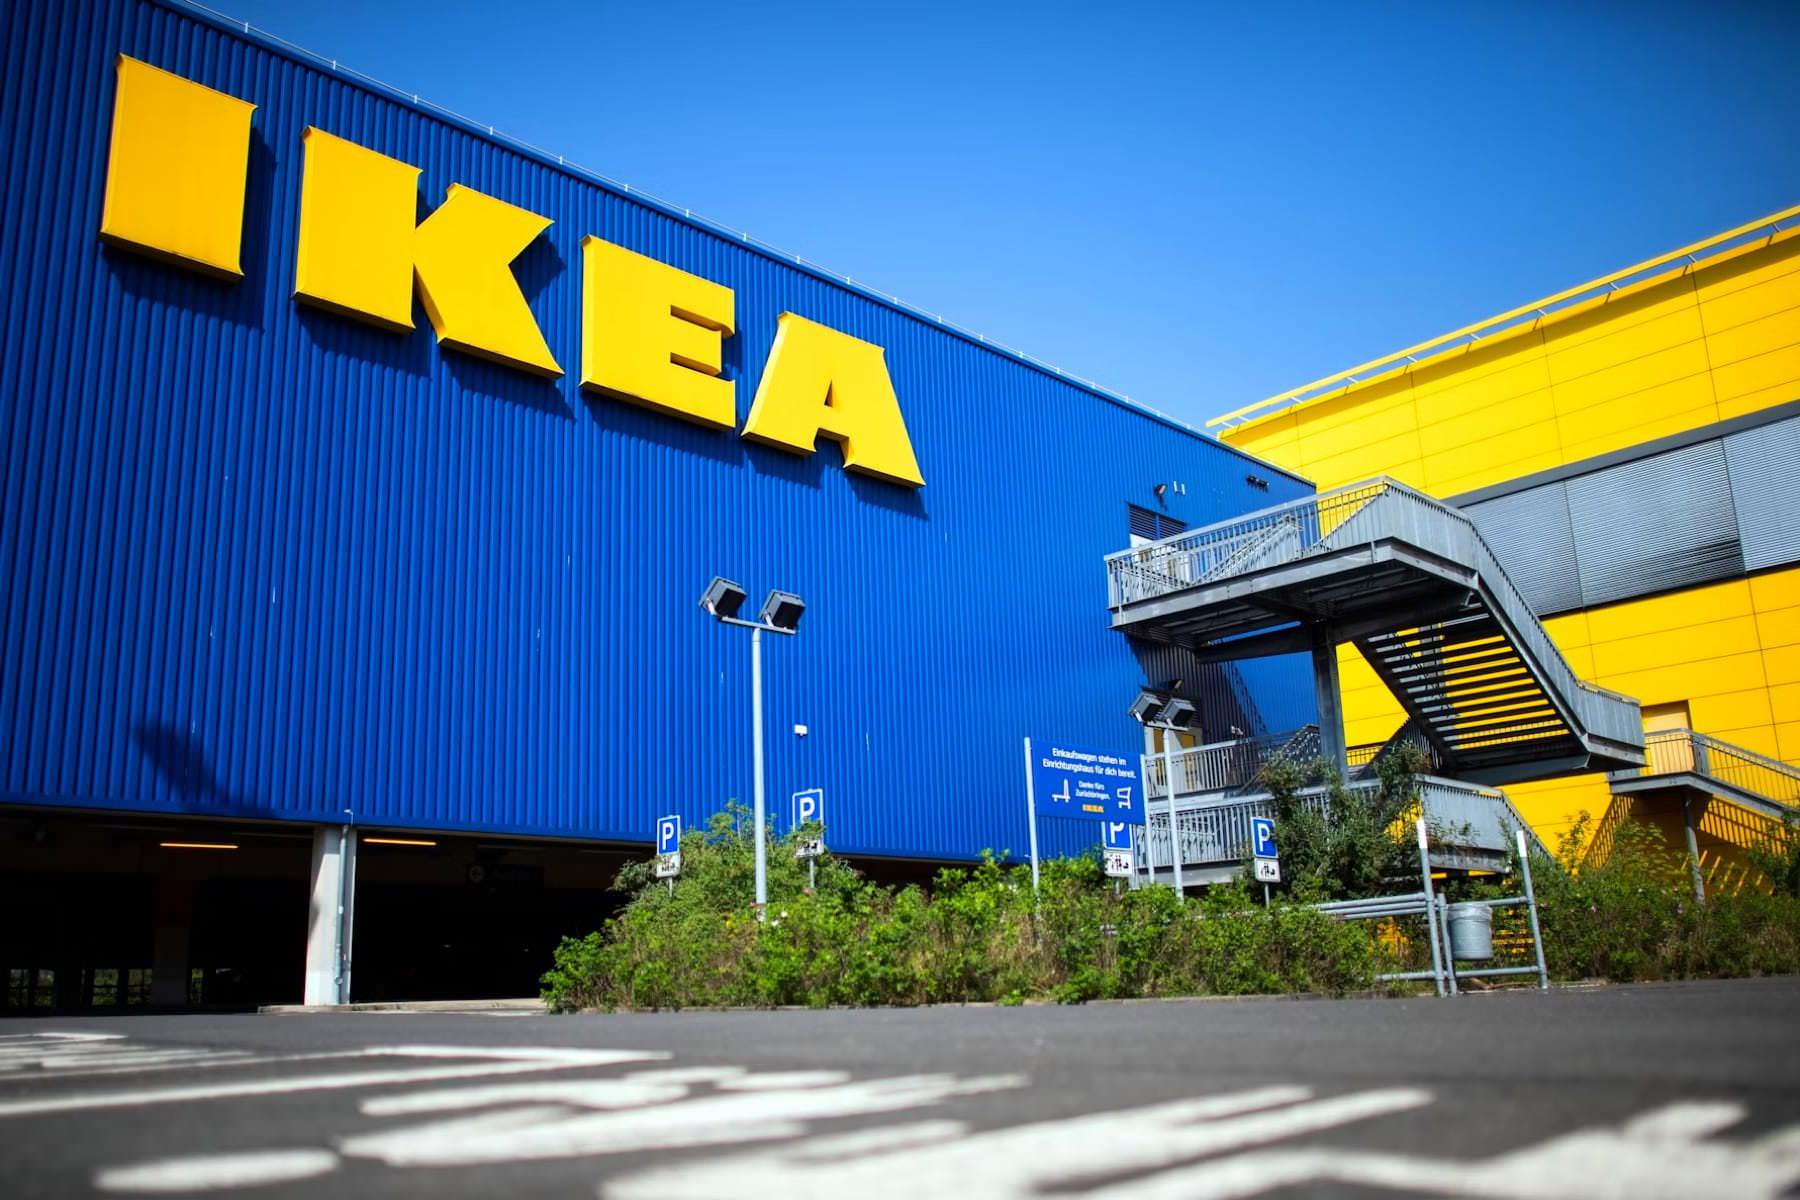 Товары IKEA поступили в продажу по всей России. Их уже может купить любой желающий